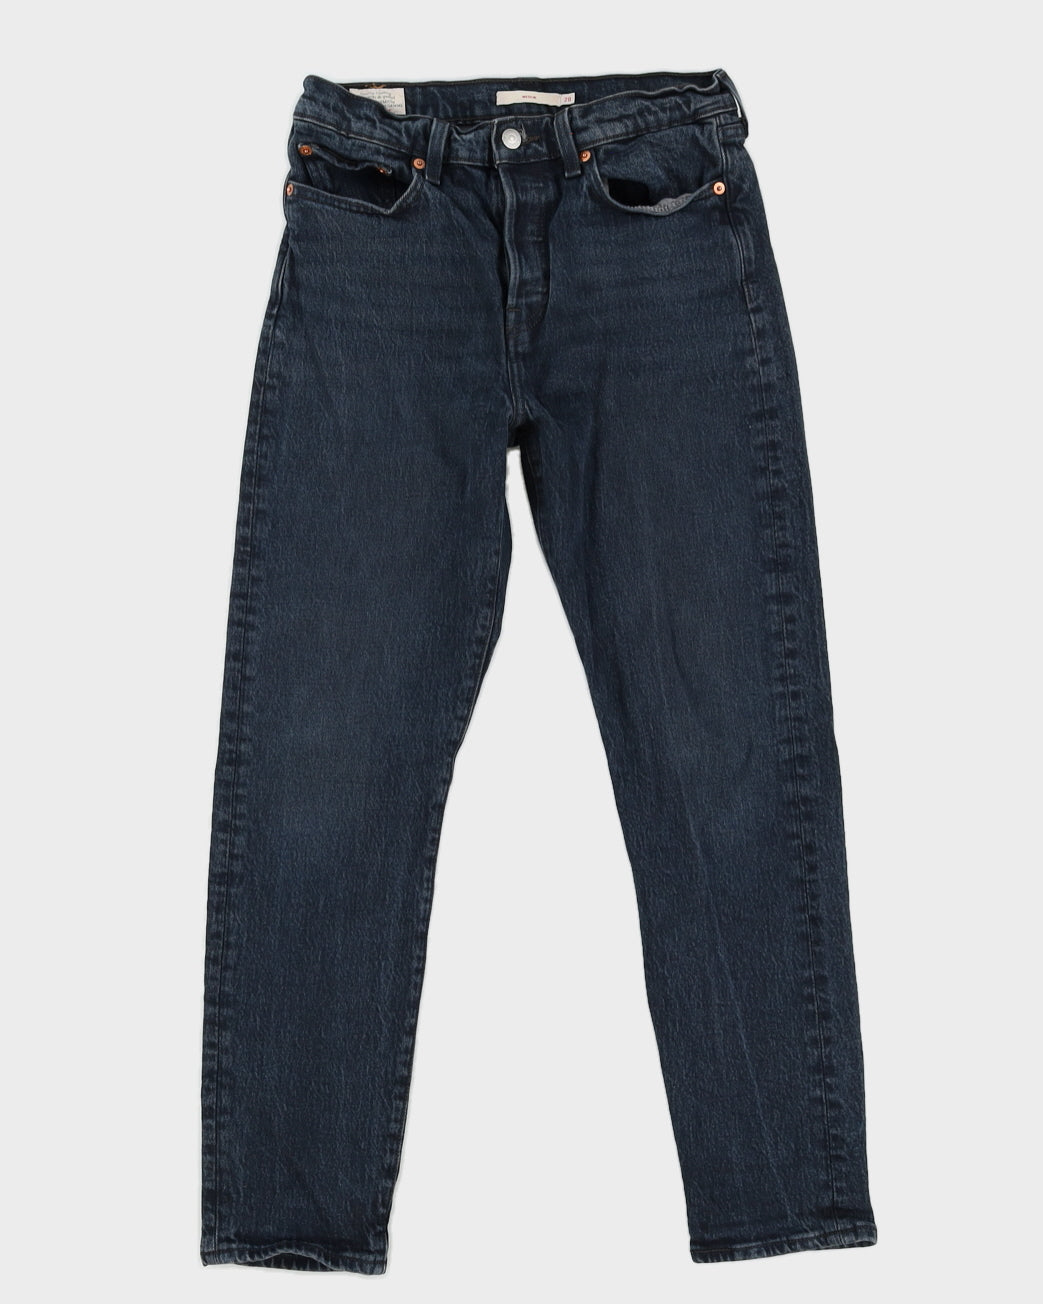 Levi's Big E Repro Black Faded Jeans - W28 L28